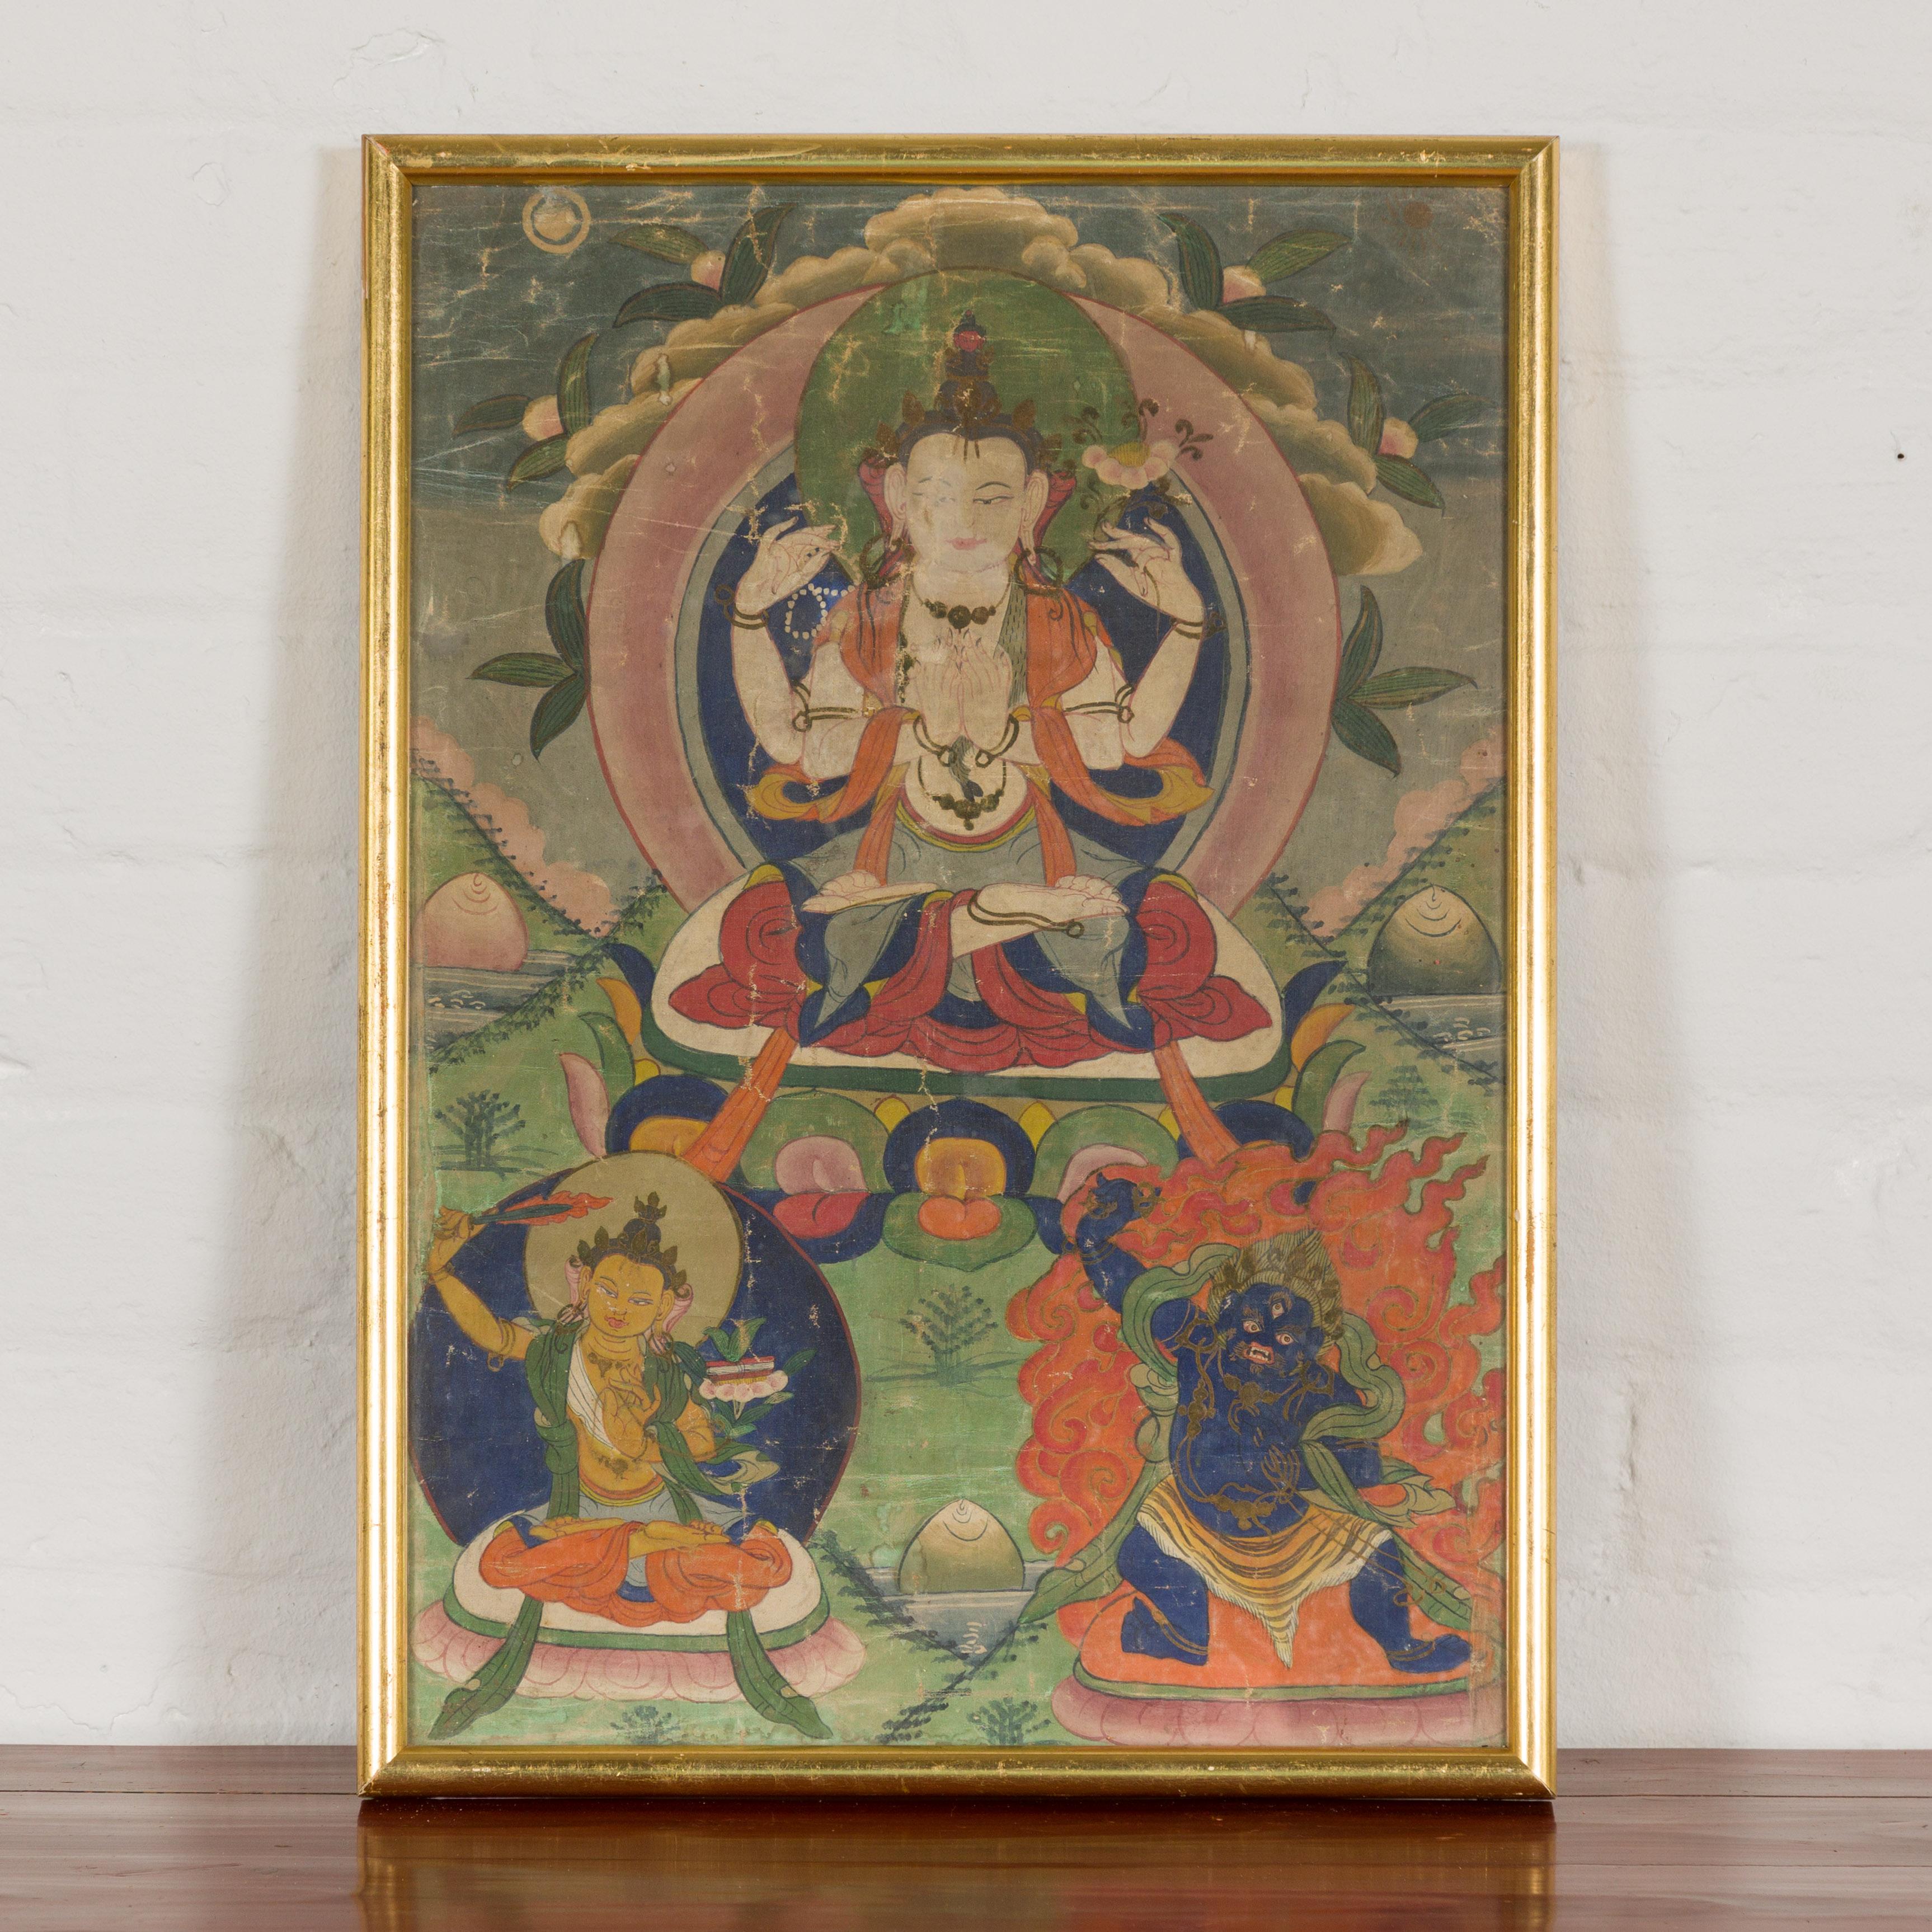 Ein tibetisches Thangka-Buddhistisches Gemälde, handgemalt auf Leinwand, geschaffen für die Verehrung der Drei Großen Bodhisattvas. Umarmen Sie die reiche Tradition des tibetischen Buddhismus mit diesem lebendigen Thangka-Gemälde, einem strahlenden